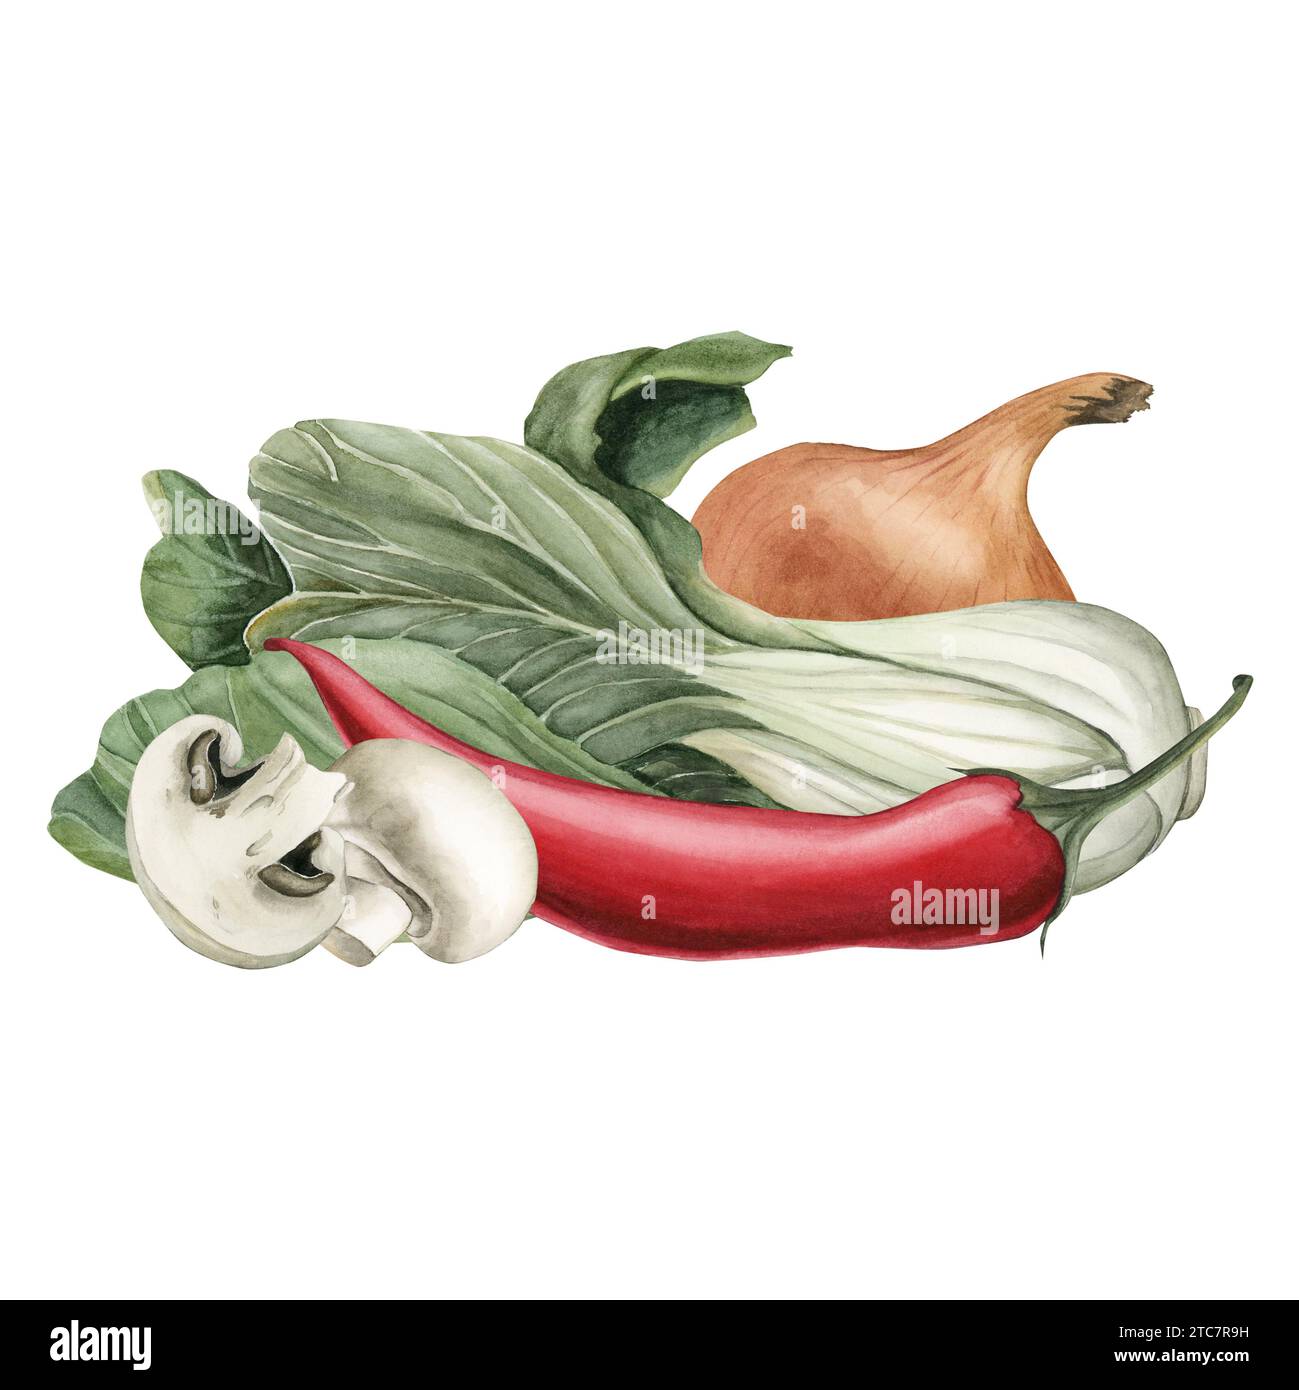 Composizione di Bok Choy, pepe rosso, cipolla e funghi. Verdure fresche. Illustrazione acquerello dipinto a mano isolato su sfondo bianco. Foto Stock